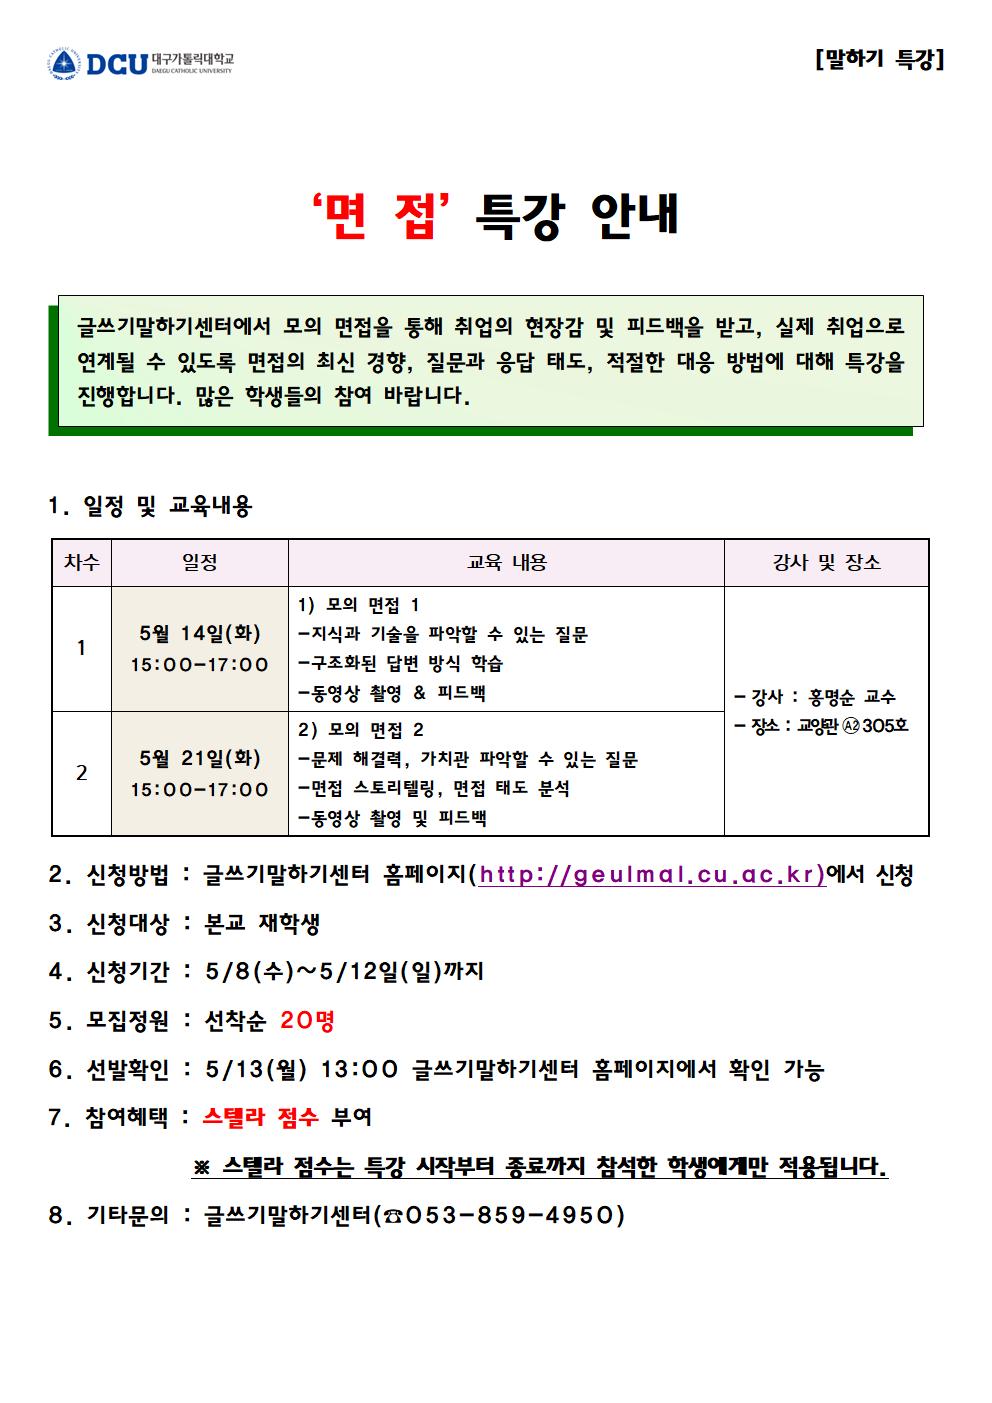 2019-1학기 '면접' 특강 신청 안내